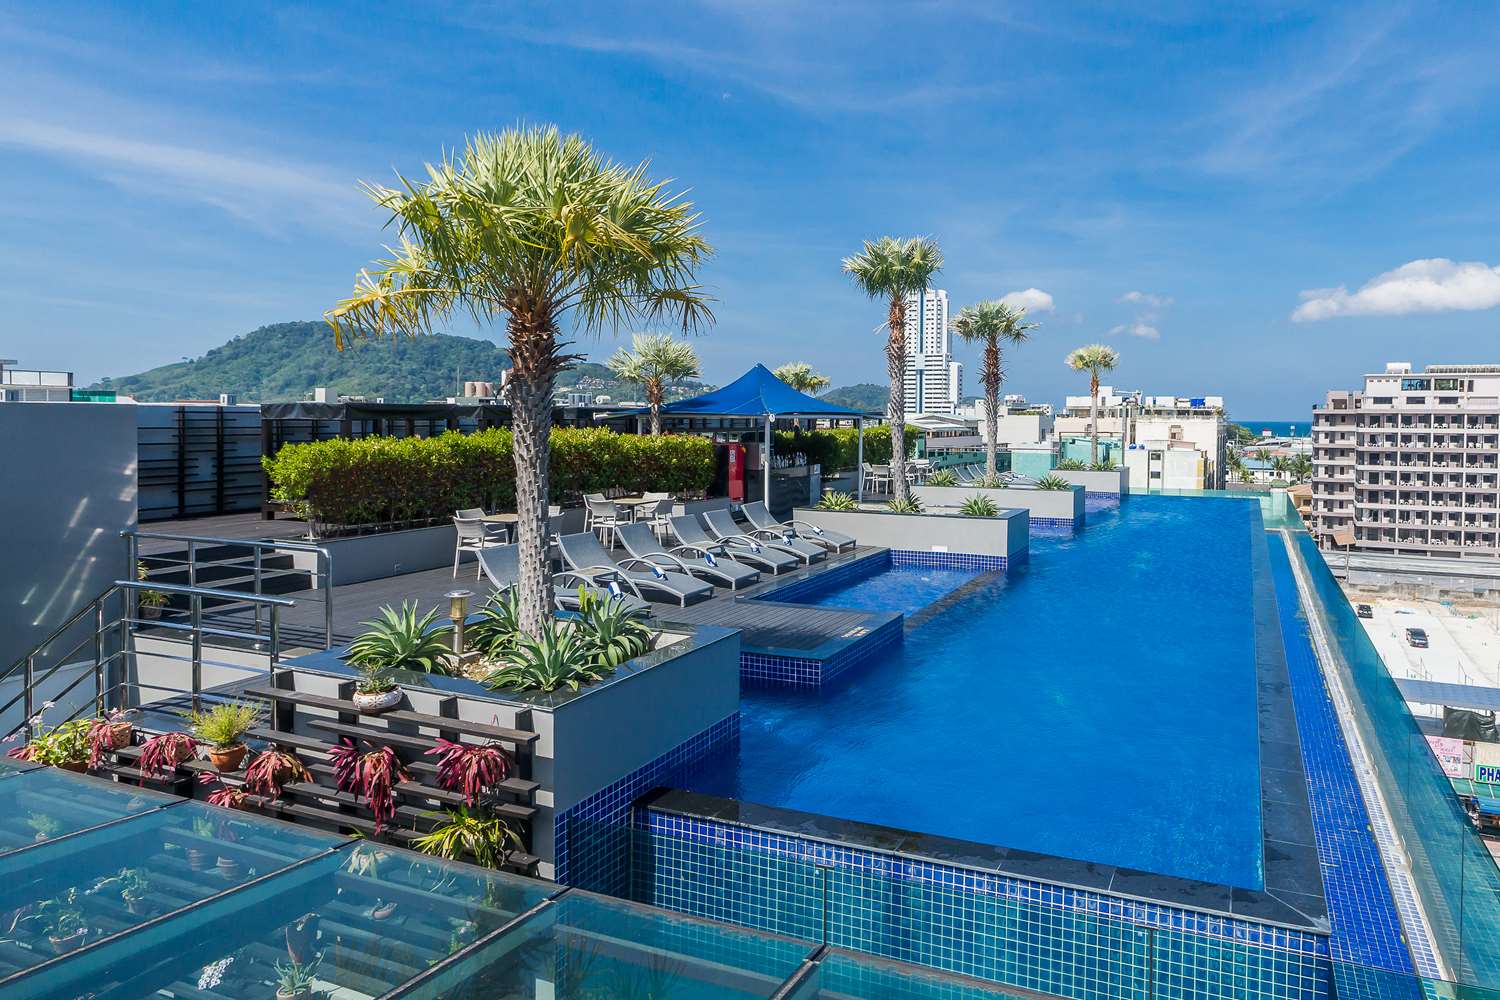 First Phuket Louis - Thailand Luxury Retail & Hotel